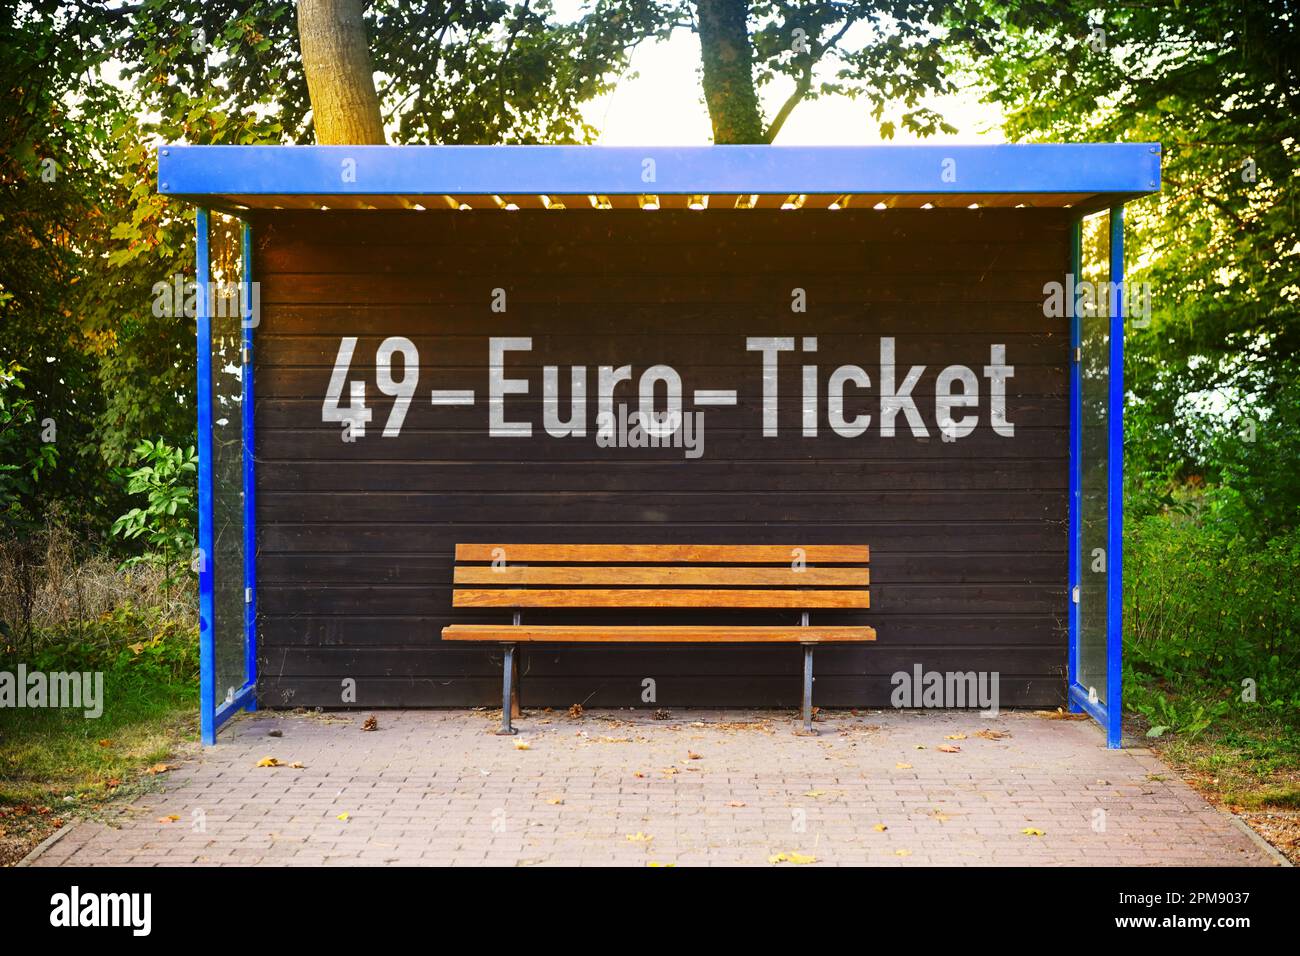 FOTOMONTAGE, Bushaltestelle mit Aufschrift 49-Euro-Ticket, 49-Euro-Ticket als möglicher Nachfolger des Neun-Euro-Tickets, Symbolfoto Stock Photo